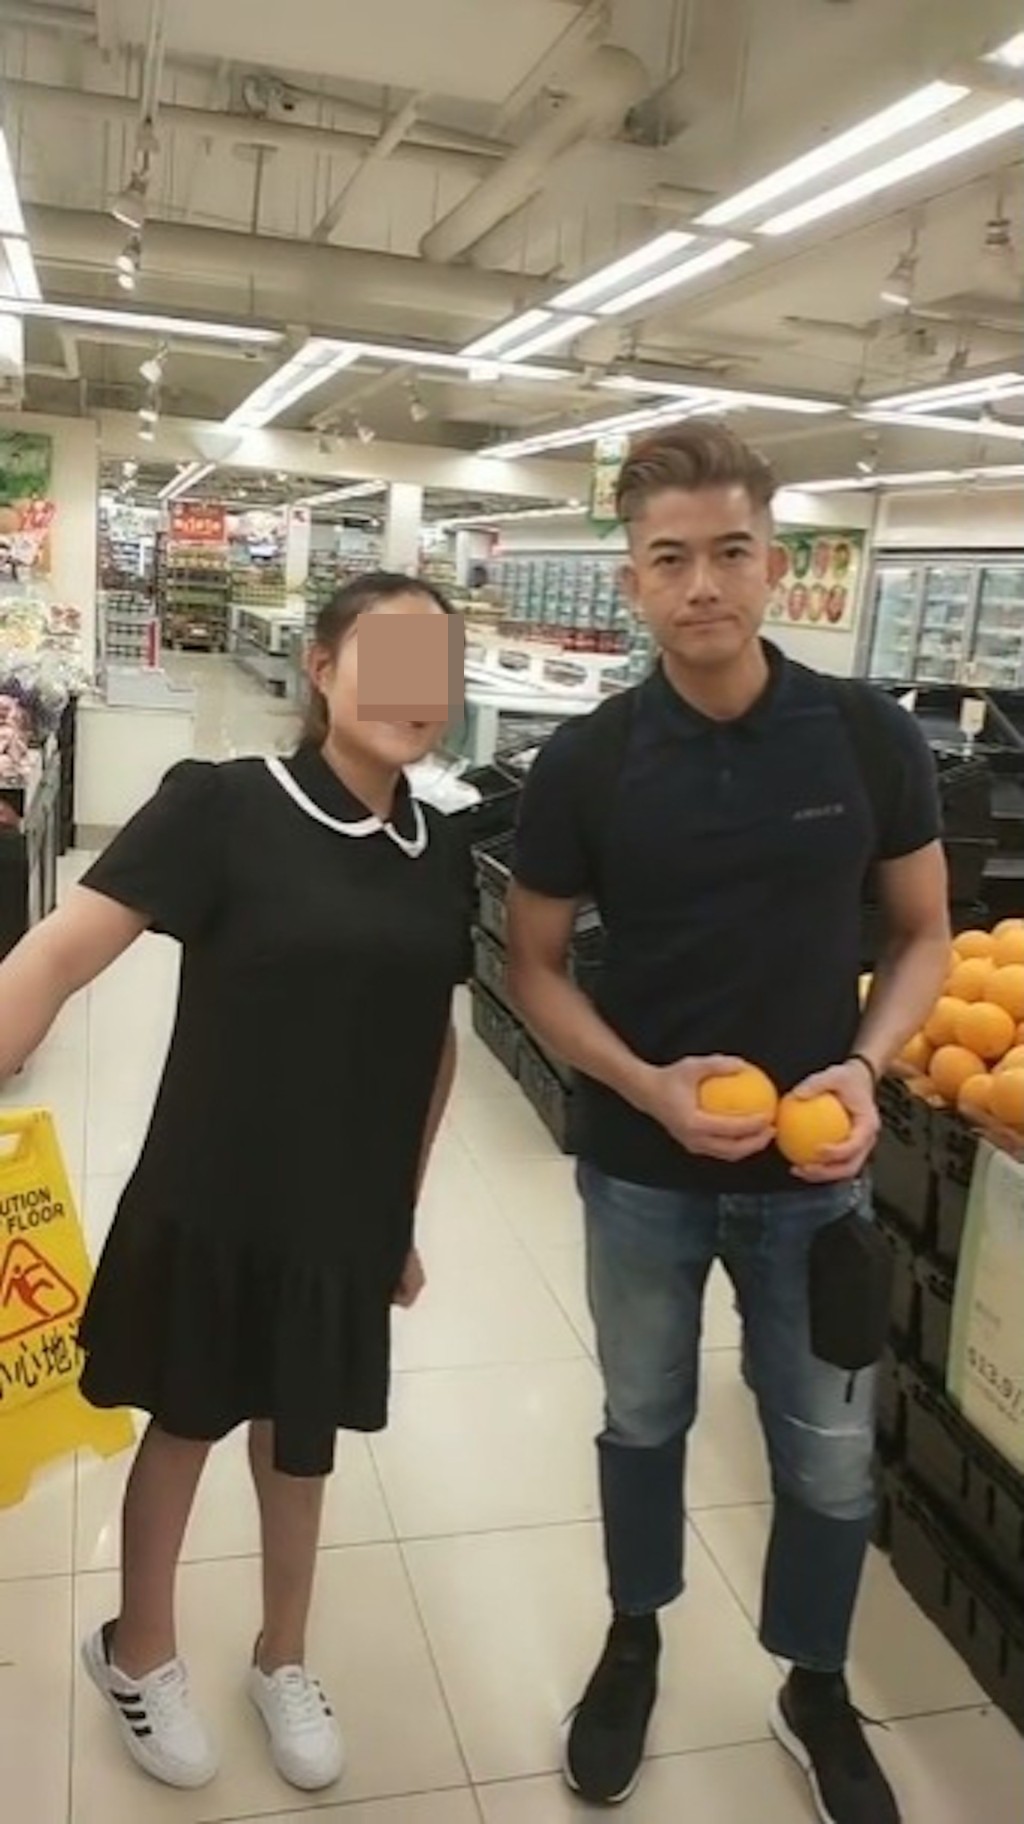 昨日有網民分享在內地超市野生捕獲郭富城的影片。